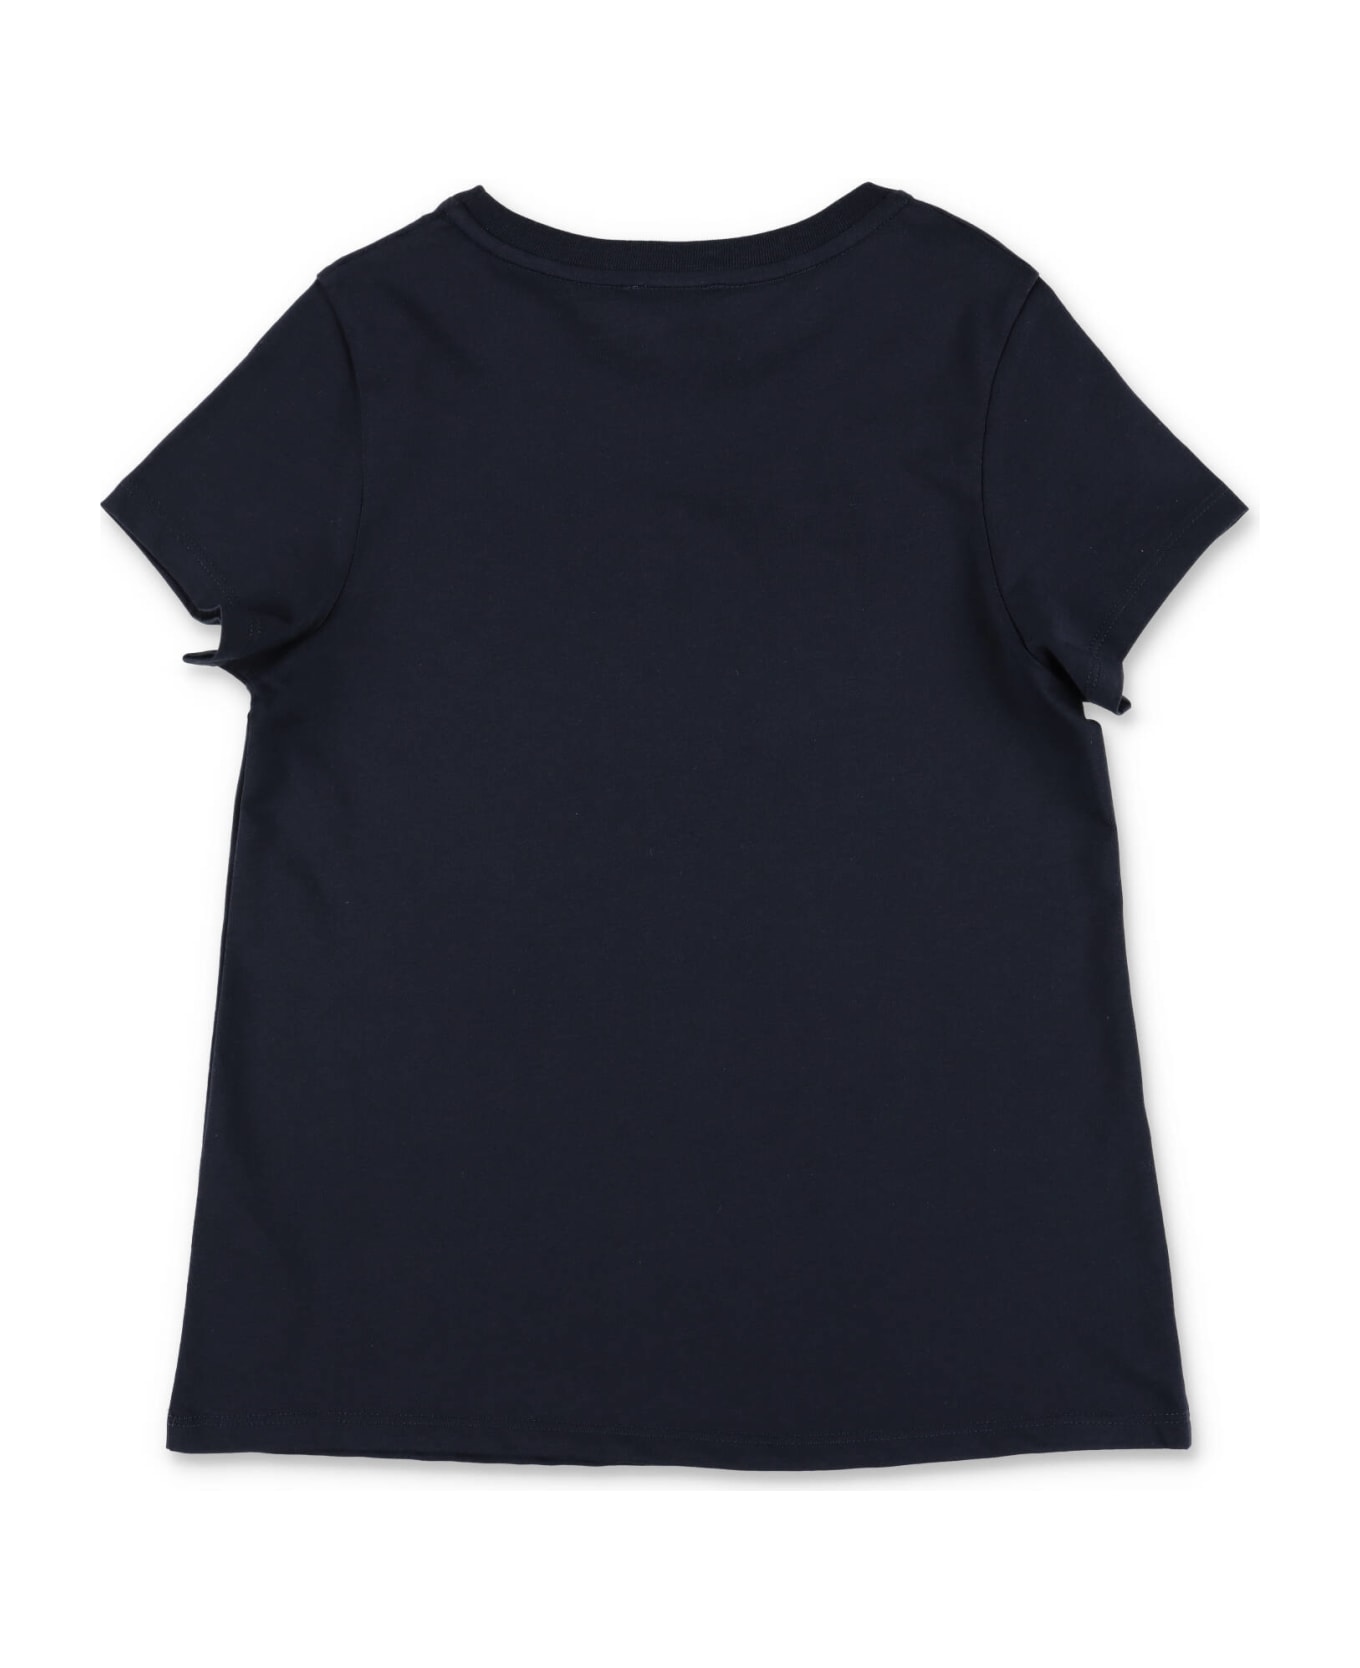 Chloé Chloe T-shirt Blu Navy In Jersey Di Cotone Bambina - Blu Tシャツ＆ポロシャツ